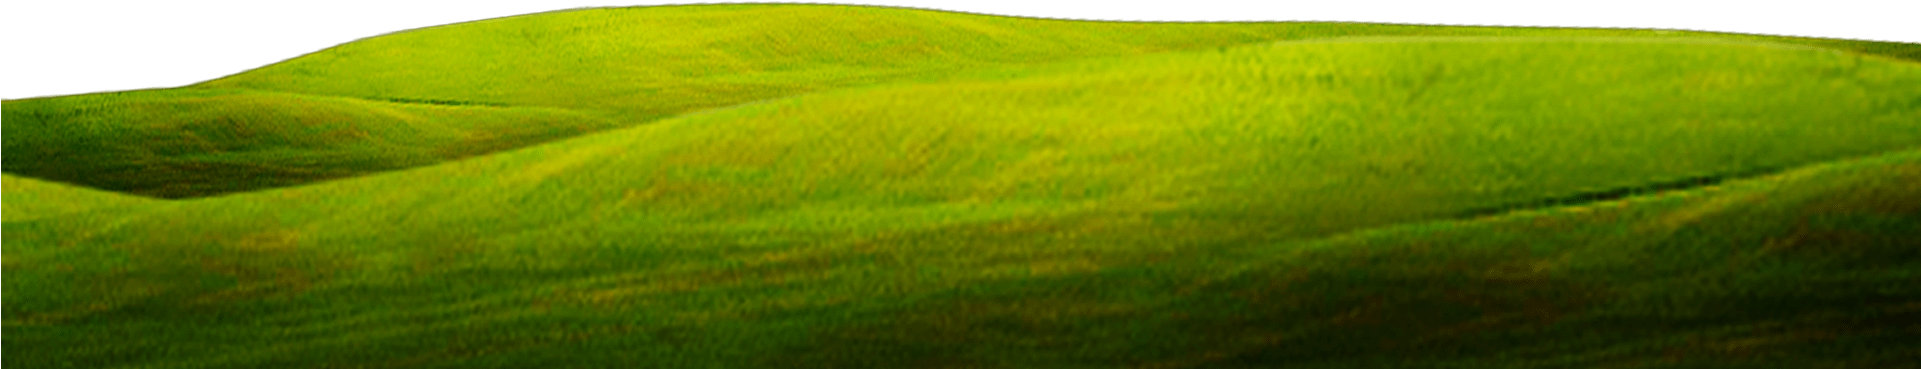 Green Close Up Wallpaper Grass Background 1920*800 - Grass Clipart (1920x800), Png Download